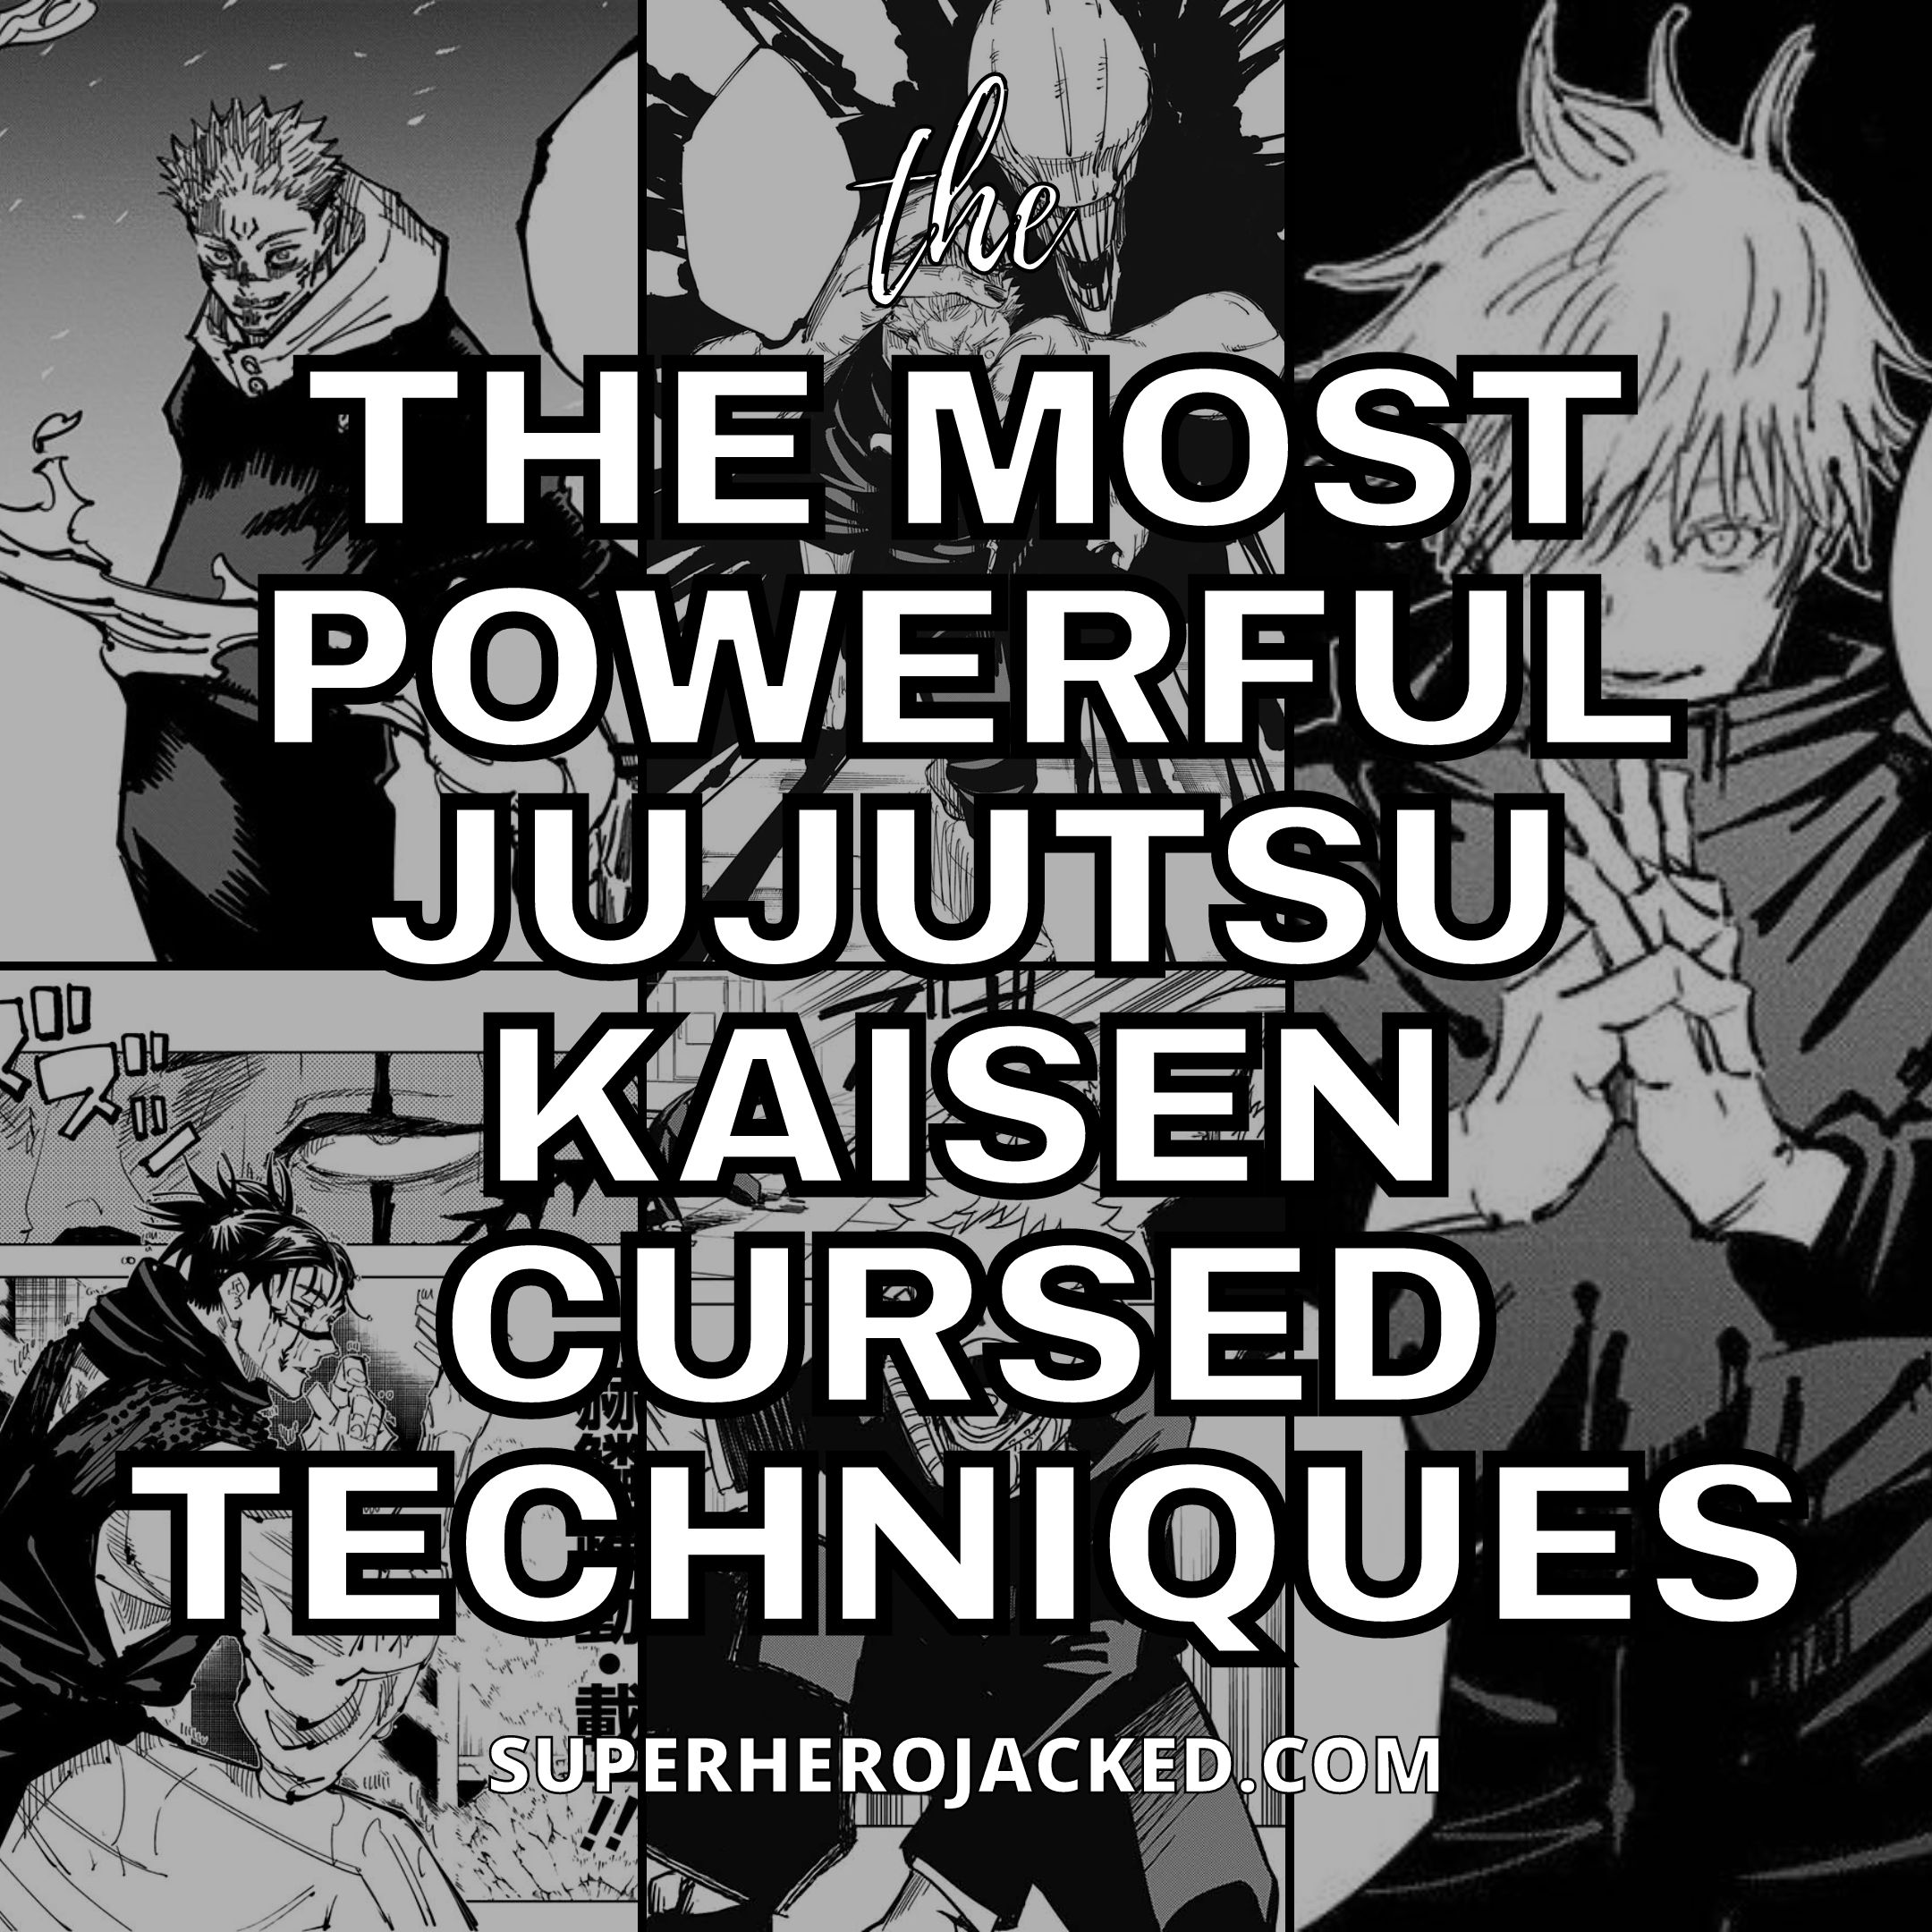 Jujutsu Kaisen: Yorozu's Cursed Technique, explained